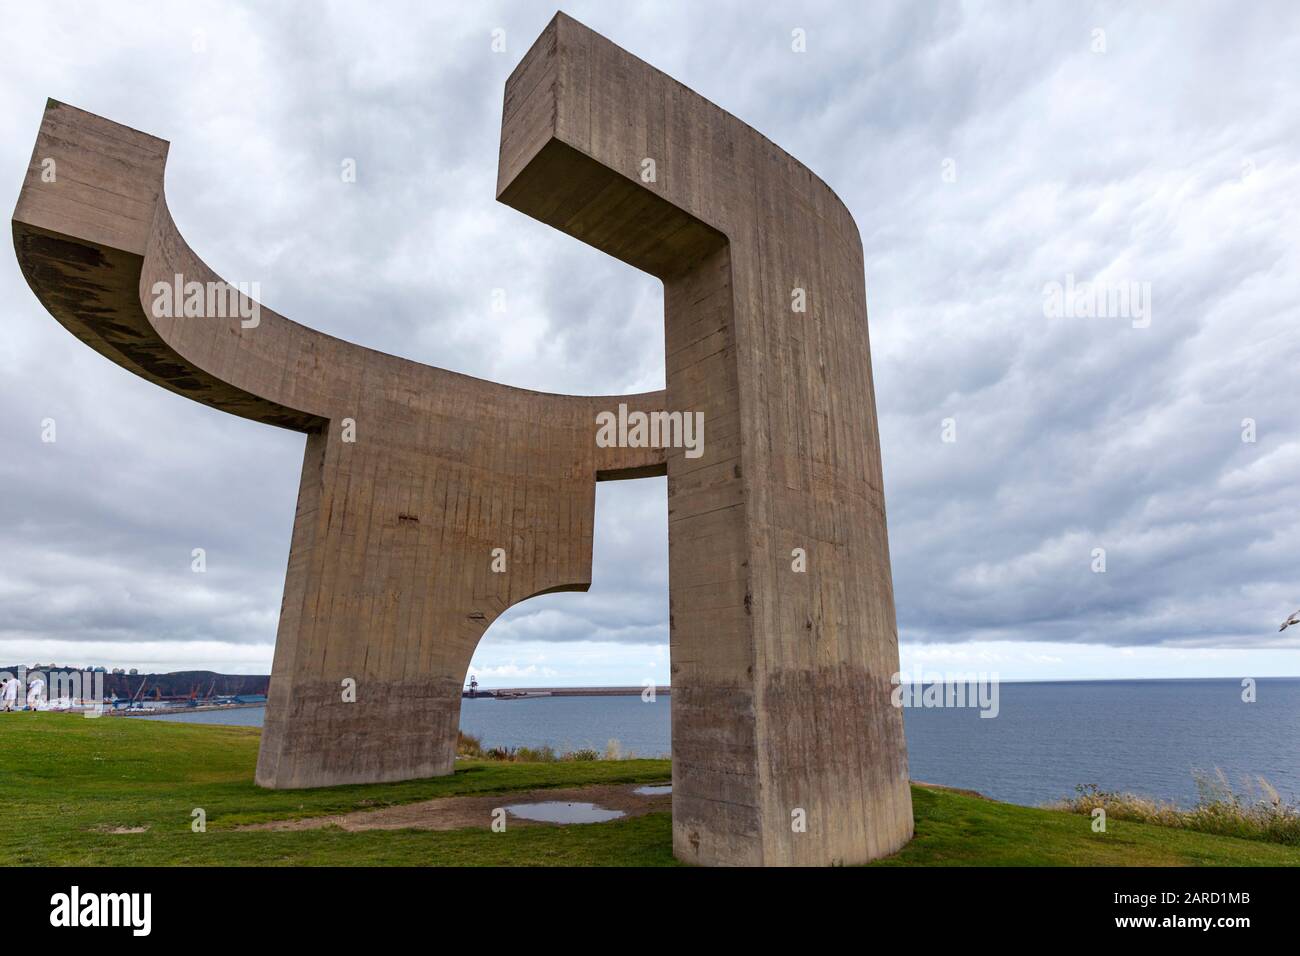 Elogio del Horizonte, scultura in cemento di fronte al mare dell'artista basco Eduardo Chillida, Gijon, Asturias, Spagna Foto Stock